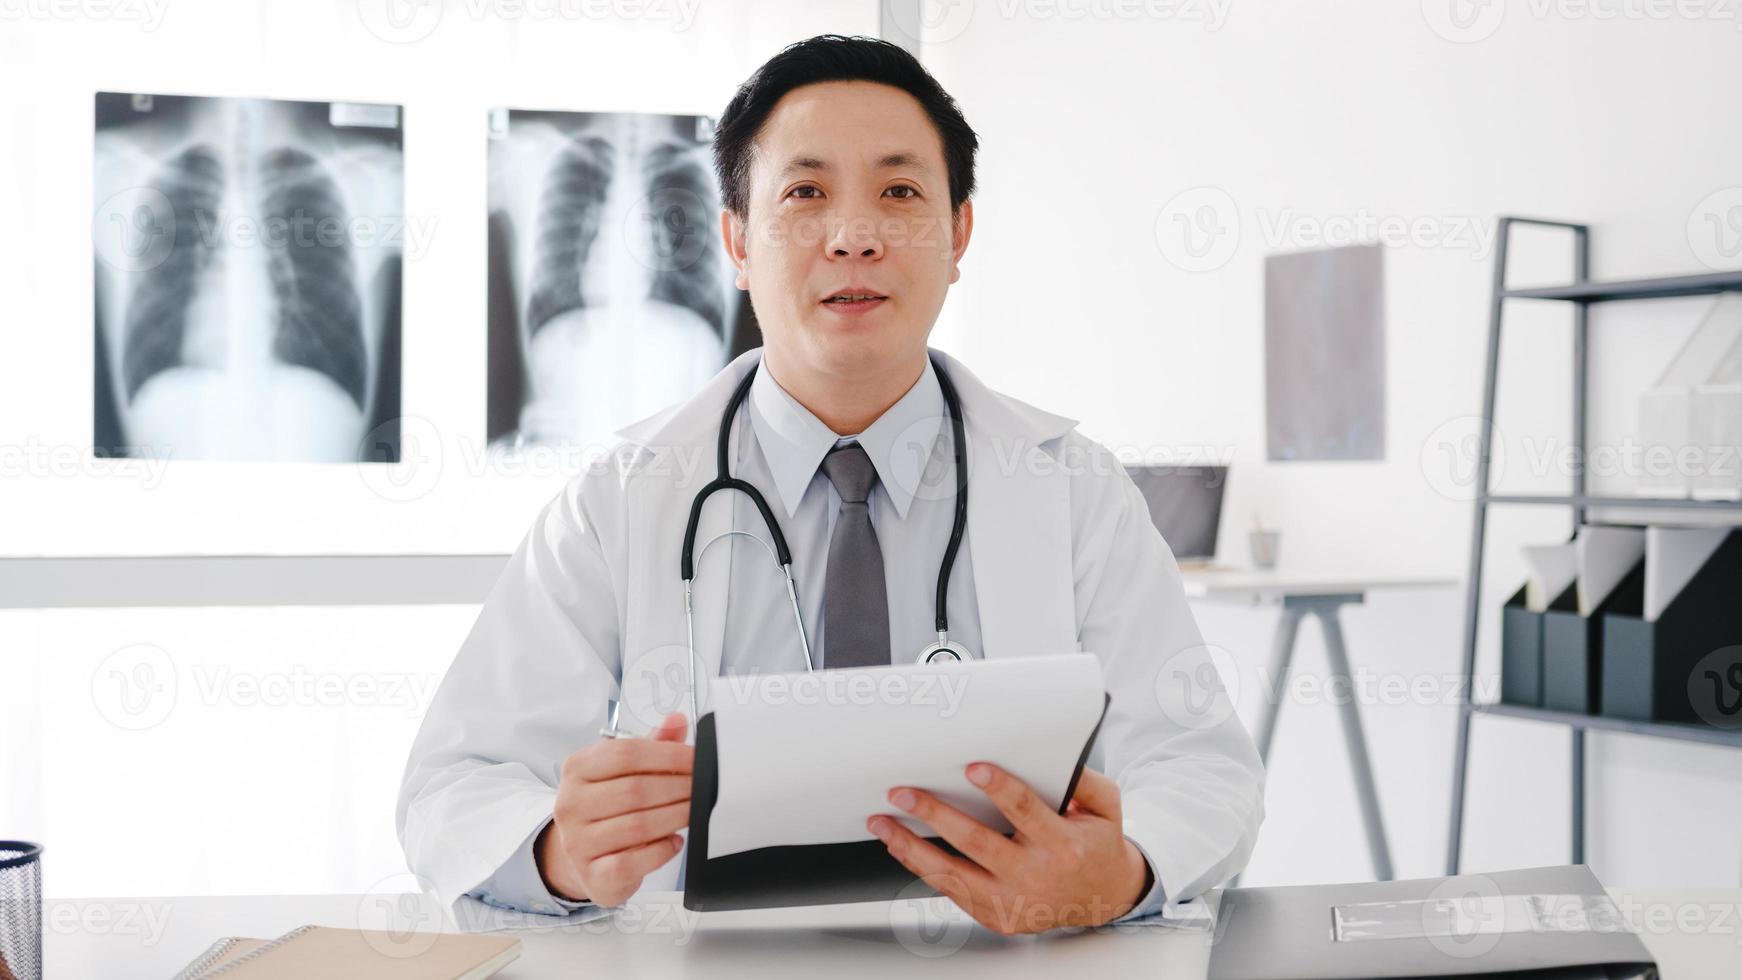 jeune médecin asiatique en uniforme médical blanc avec stéthoscope à l'aide d'un ordinateur portable parler vidéoconférence avec le patient, regardant la caméra dans un hôpital de santé. concept de conseil et de thérapie. photo